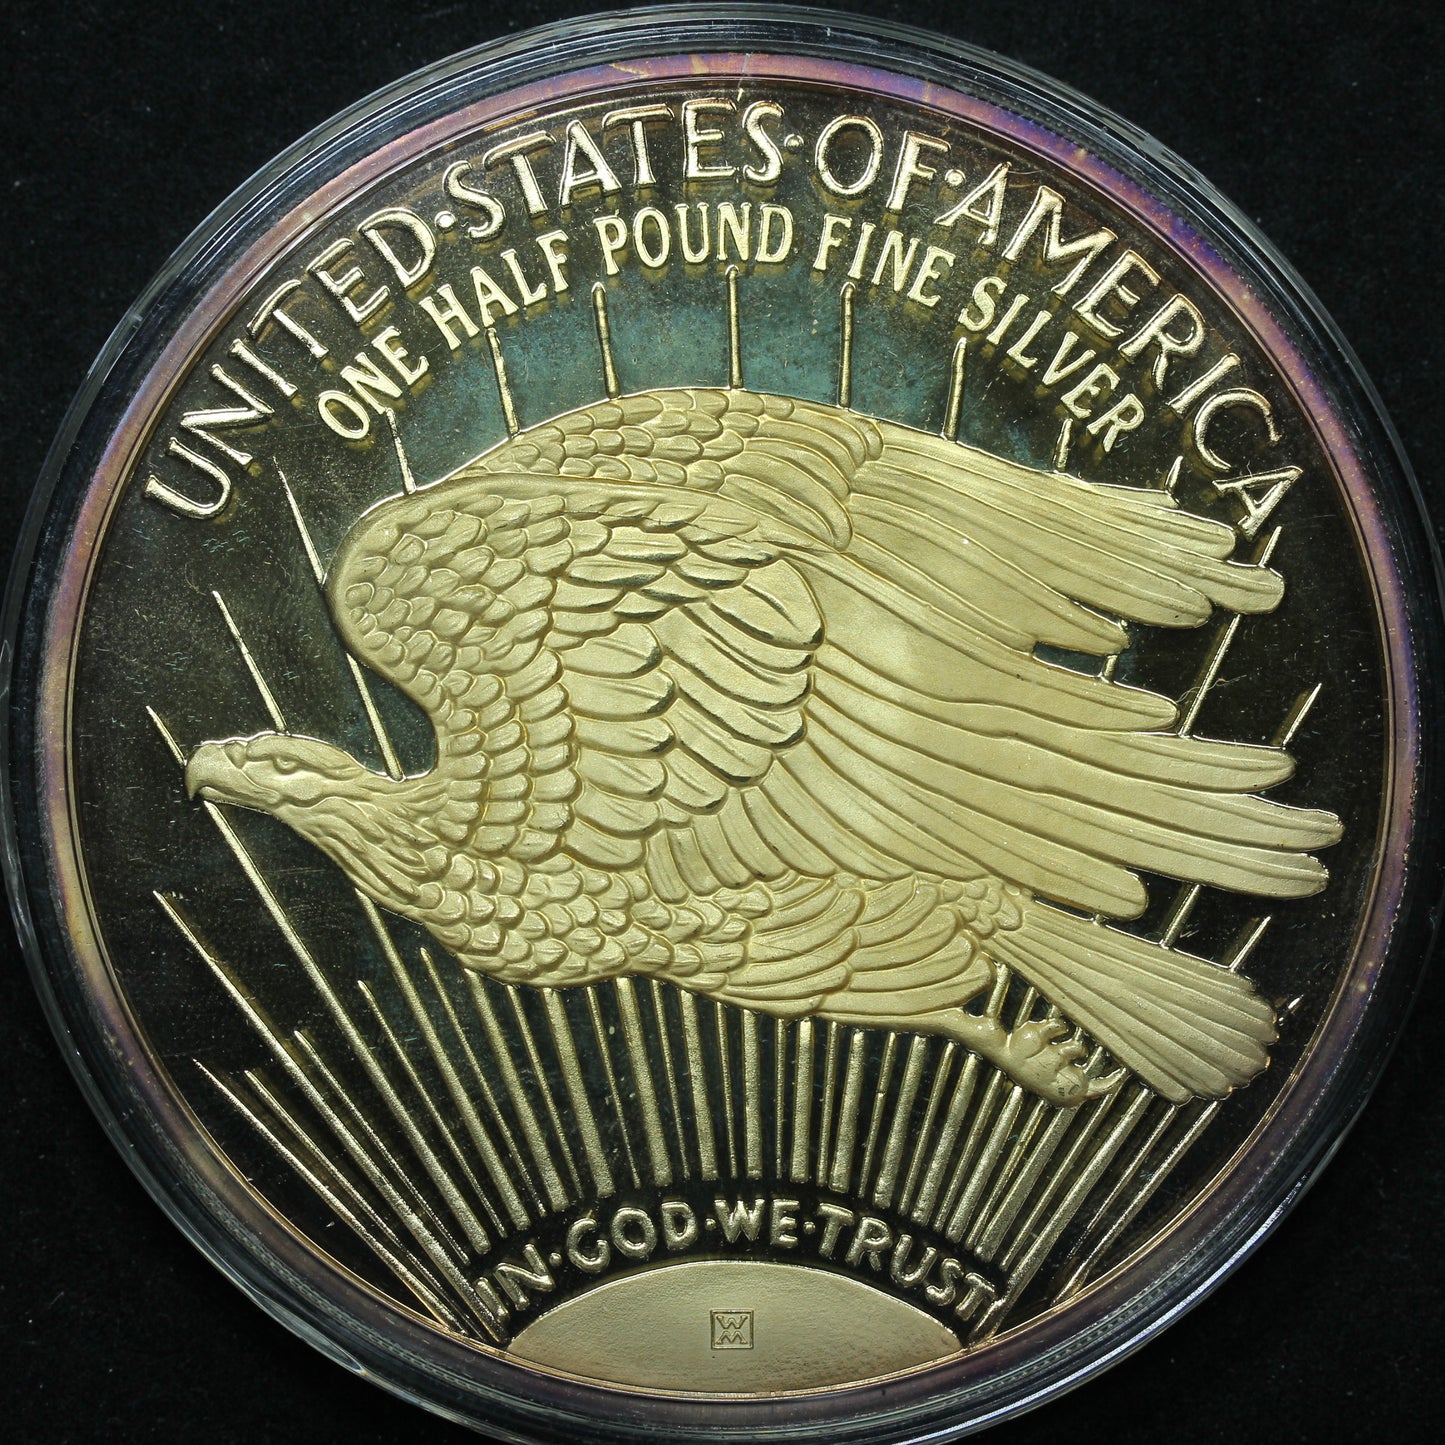 1997 Washington Mint Half Pound 'Golden Eagle' 8 oz .999 Fine Silver Round w/ Box & COA